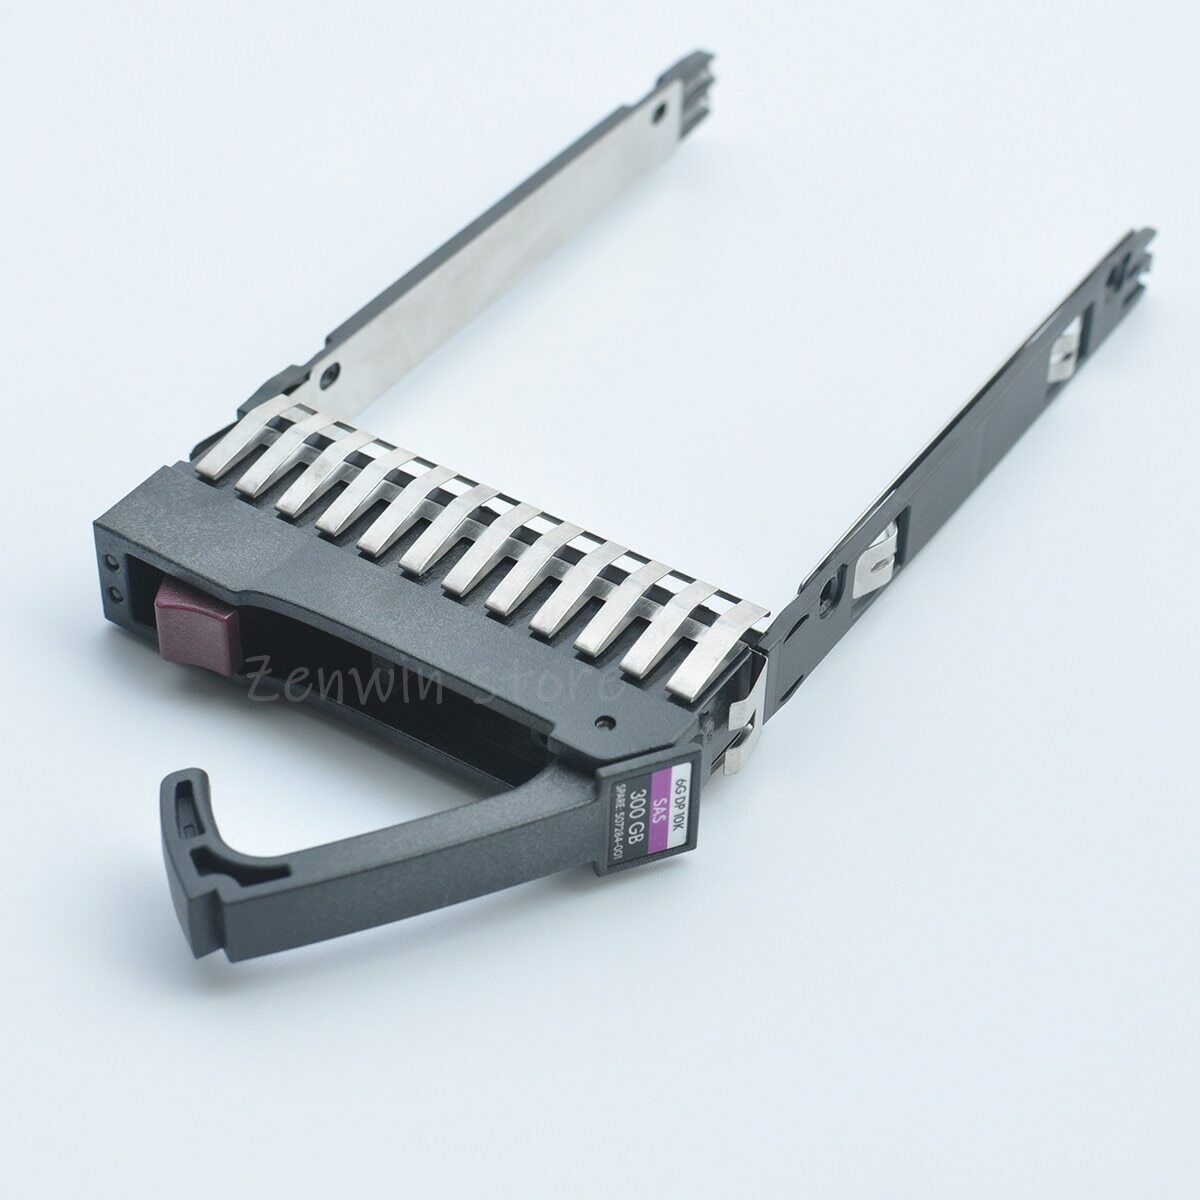 2.5" SAS HDD Tray Caddy For HP DL580 DL380 DL360 G5 G6 G7 378343-001 500223-001